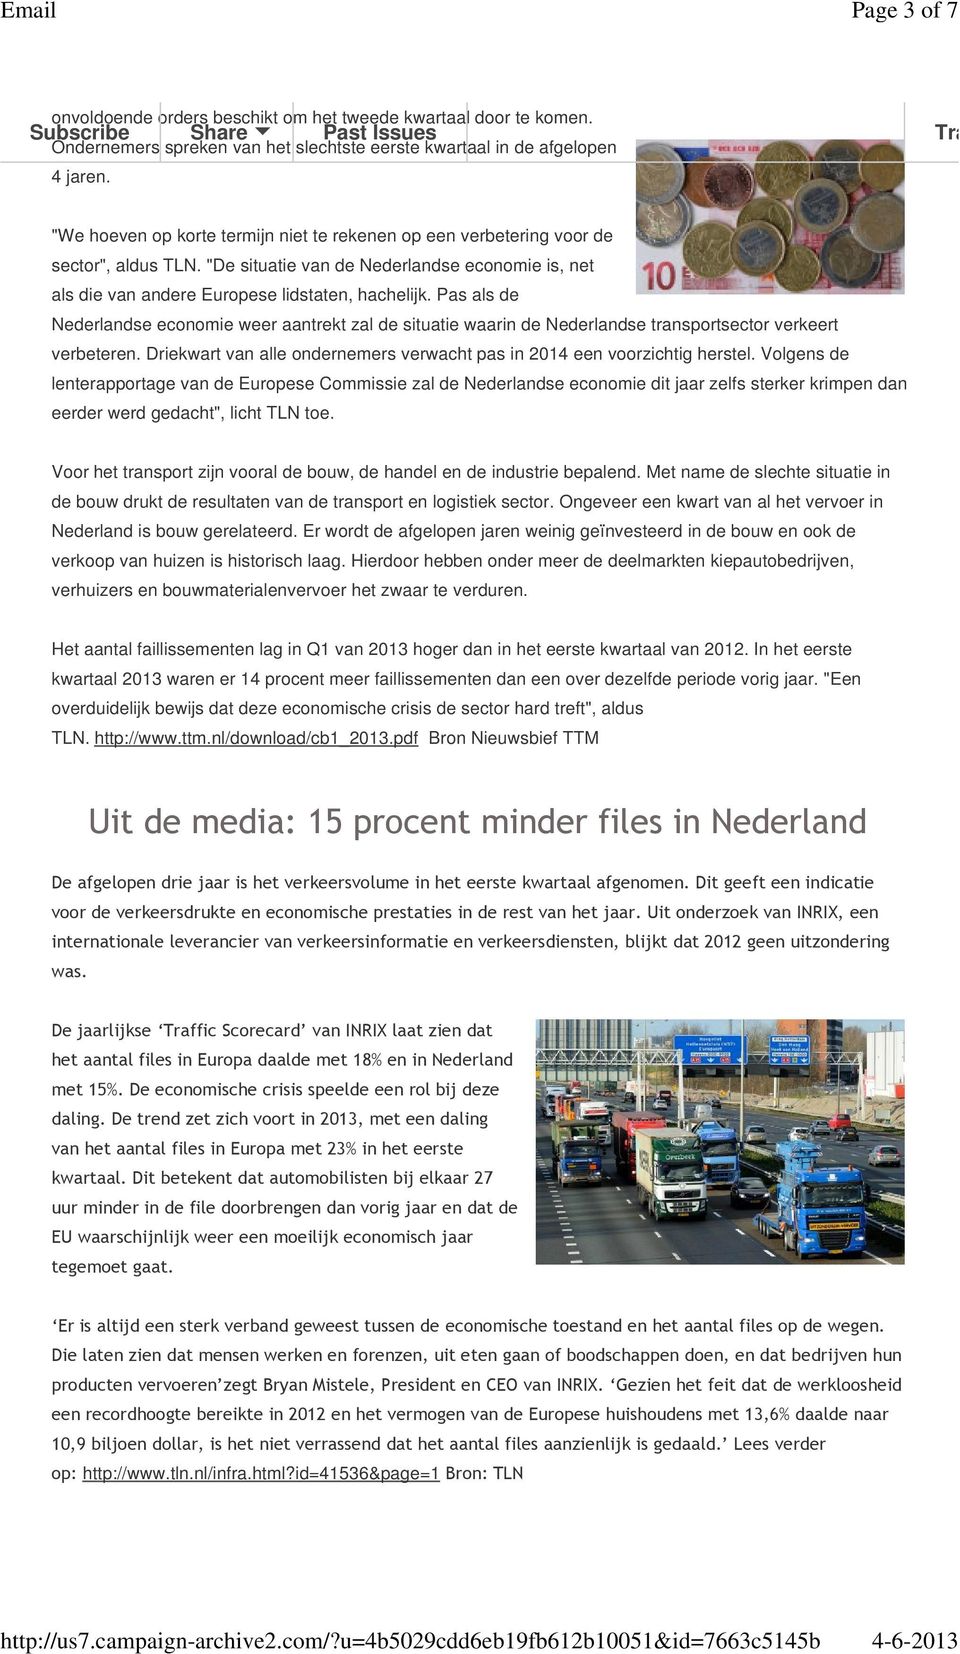 Pas als de Nederlandse economie weer aantrekt zal de situatie waarin de Nederlandse transportsector verkeert verbeteren. Driekwart van alle ondernemers verwacht pas in 2014 een voorzichtig herstel.